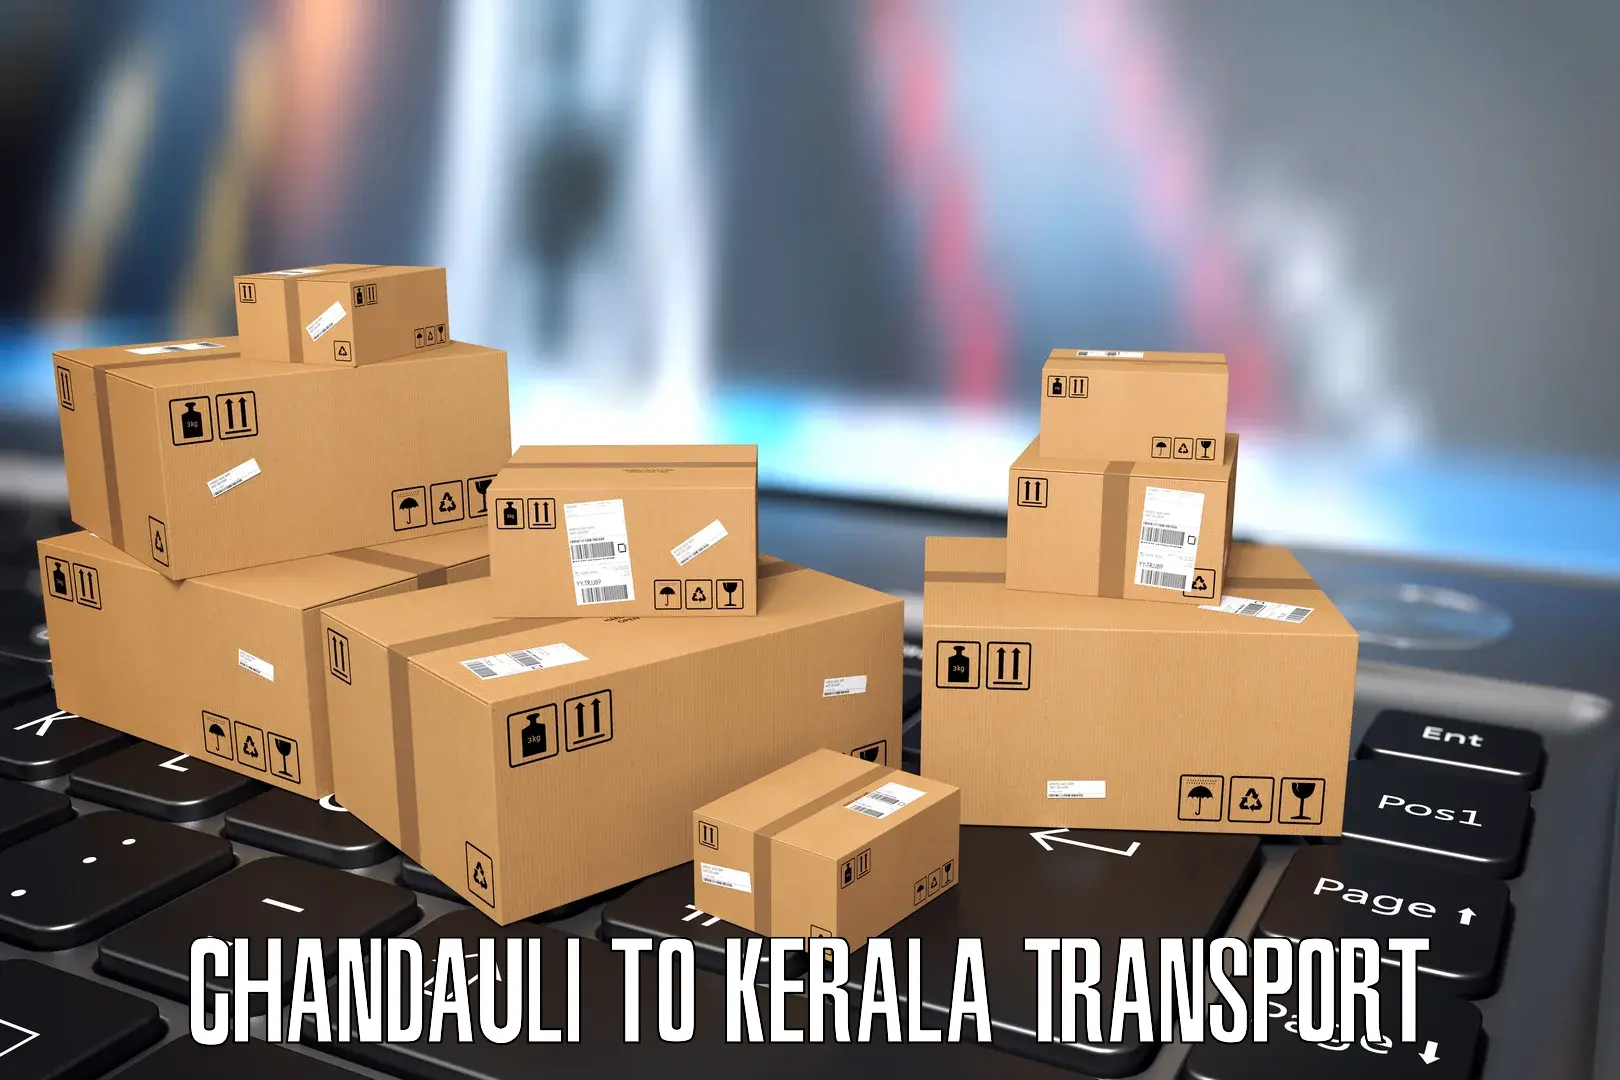 Nearby transport service Chandauli to Kottayam